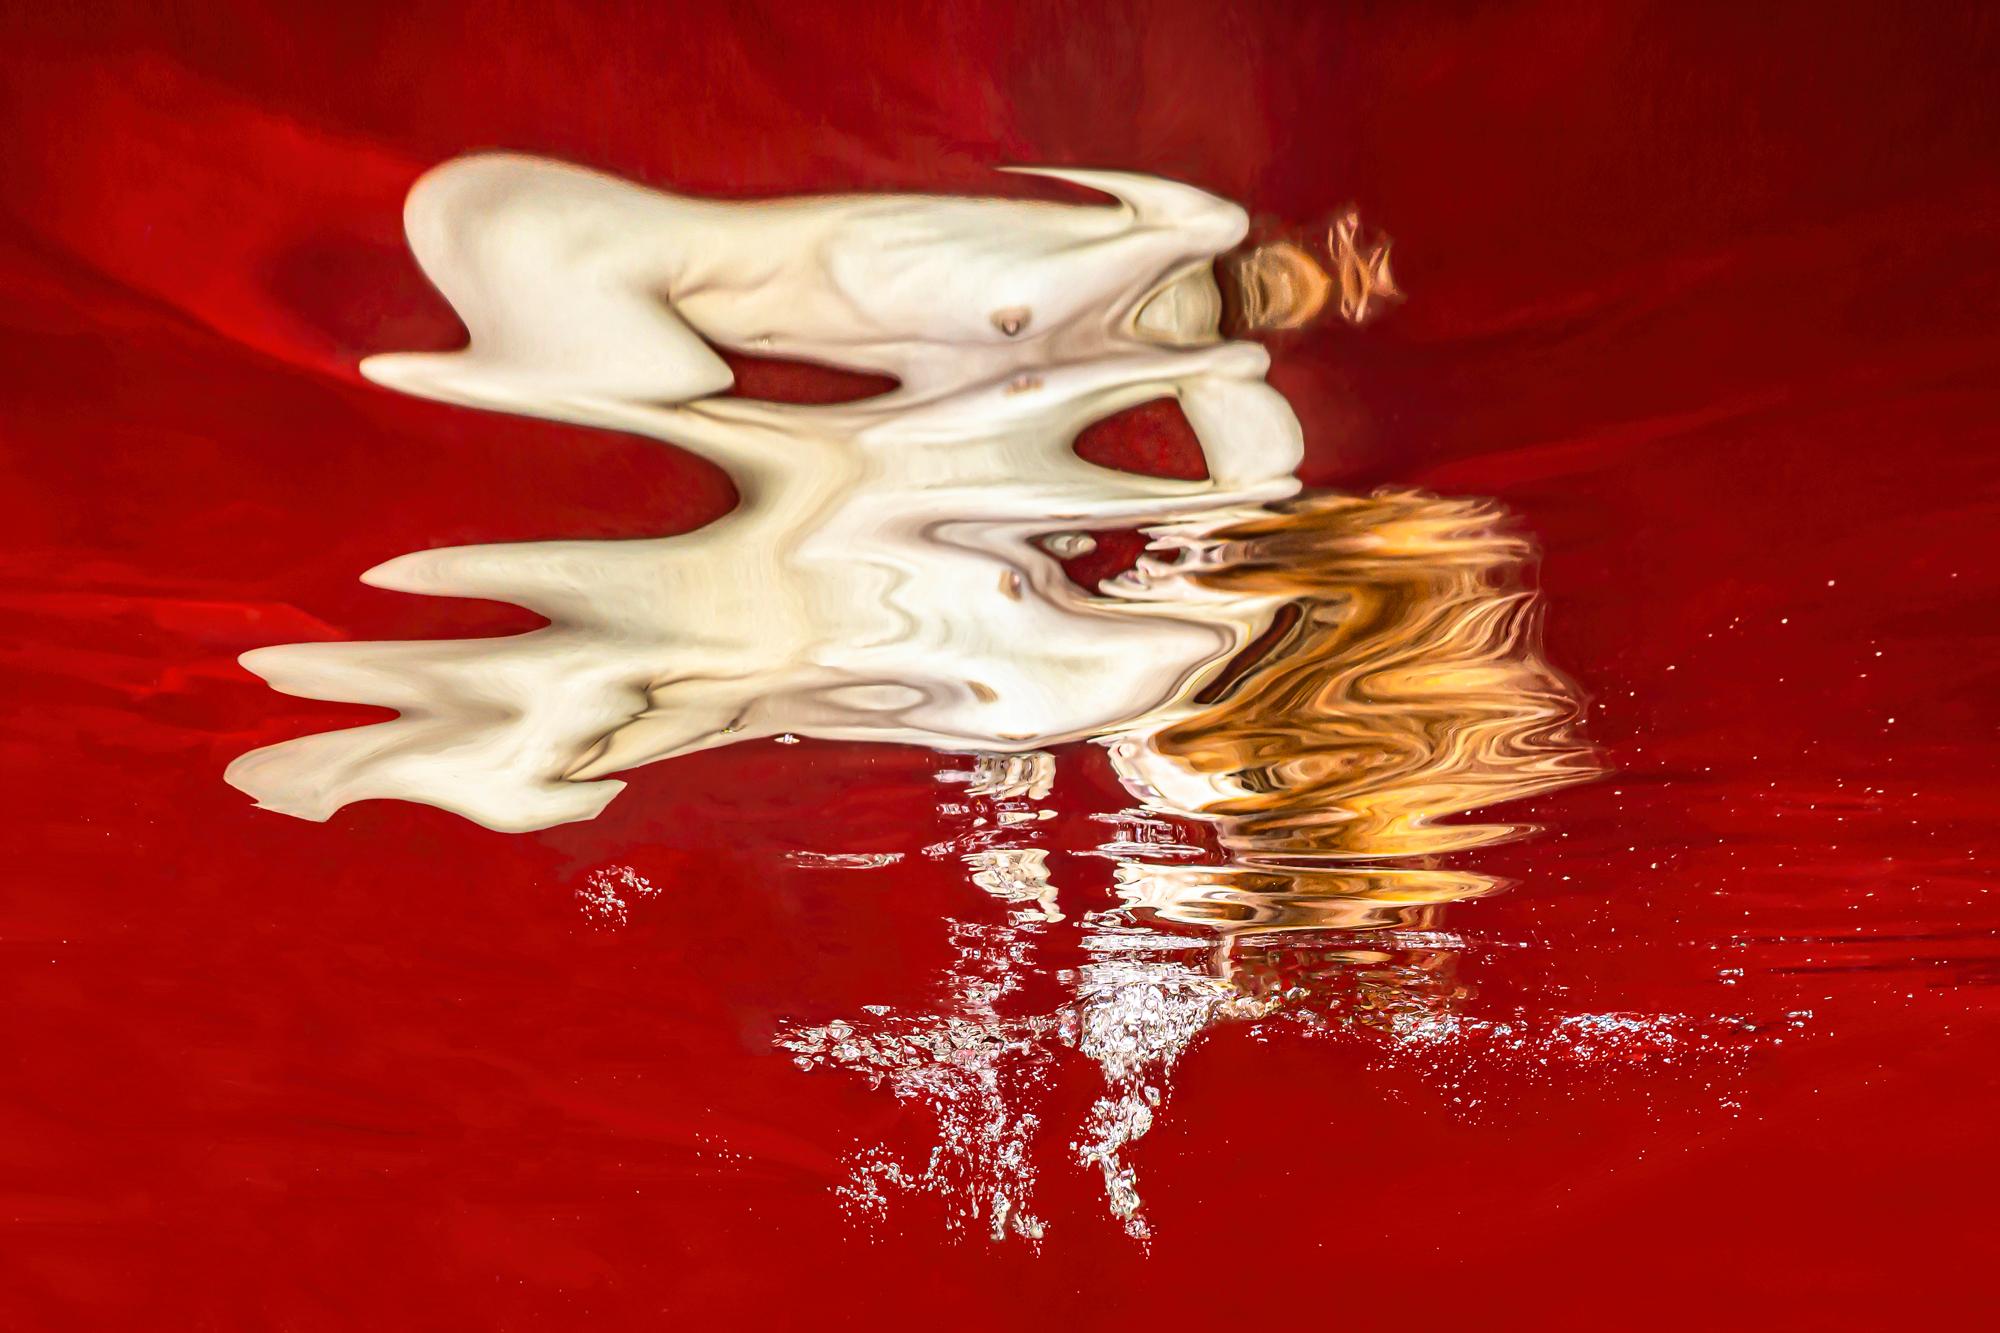 Nude Photograph Alex Sher - Étincelle  - photographie de nu sous-marine de la série REFLECTIONS - imprimé sur aluminium